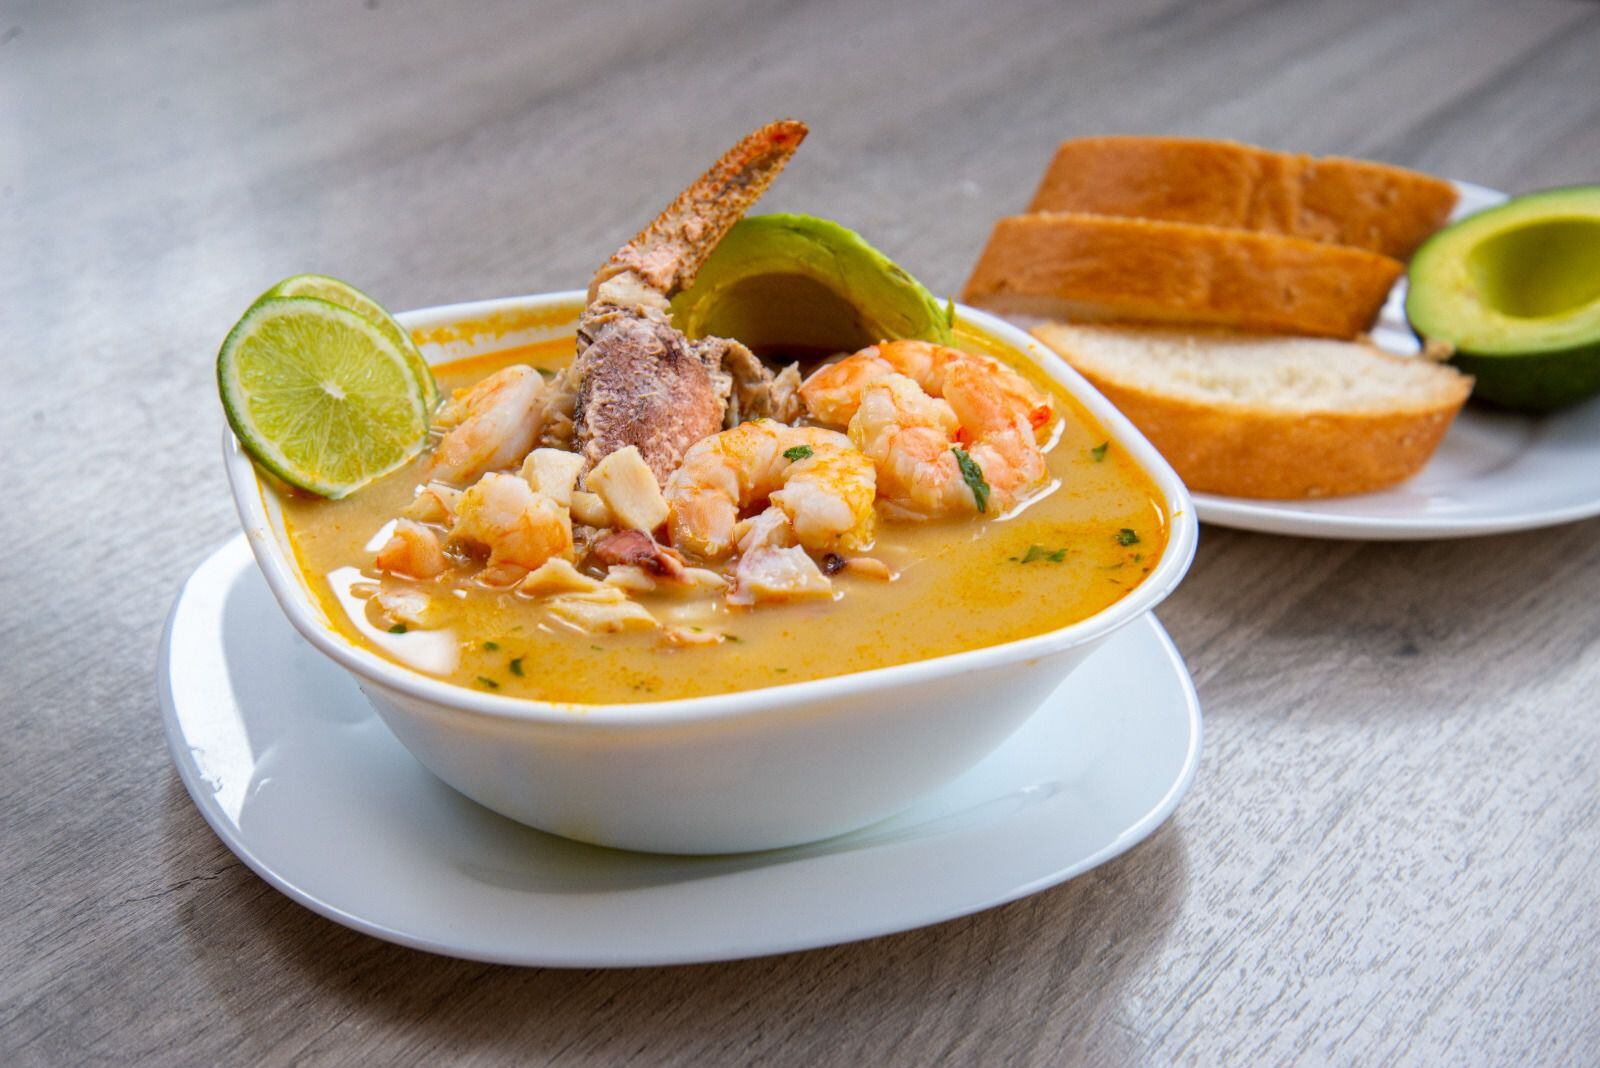 La sopa marinera es uno de los platos favoritos de los comensales de Amador. Foto Zaky Monroe. IG: @zaky.monroe